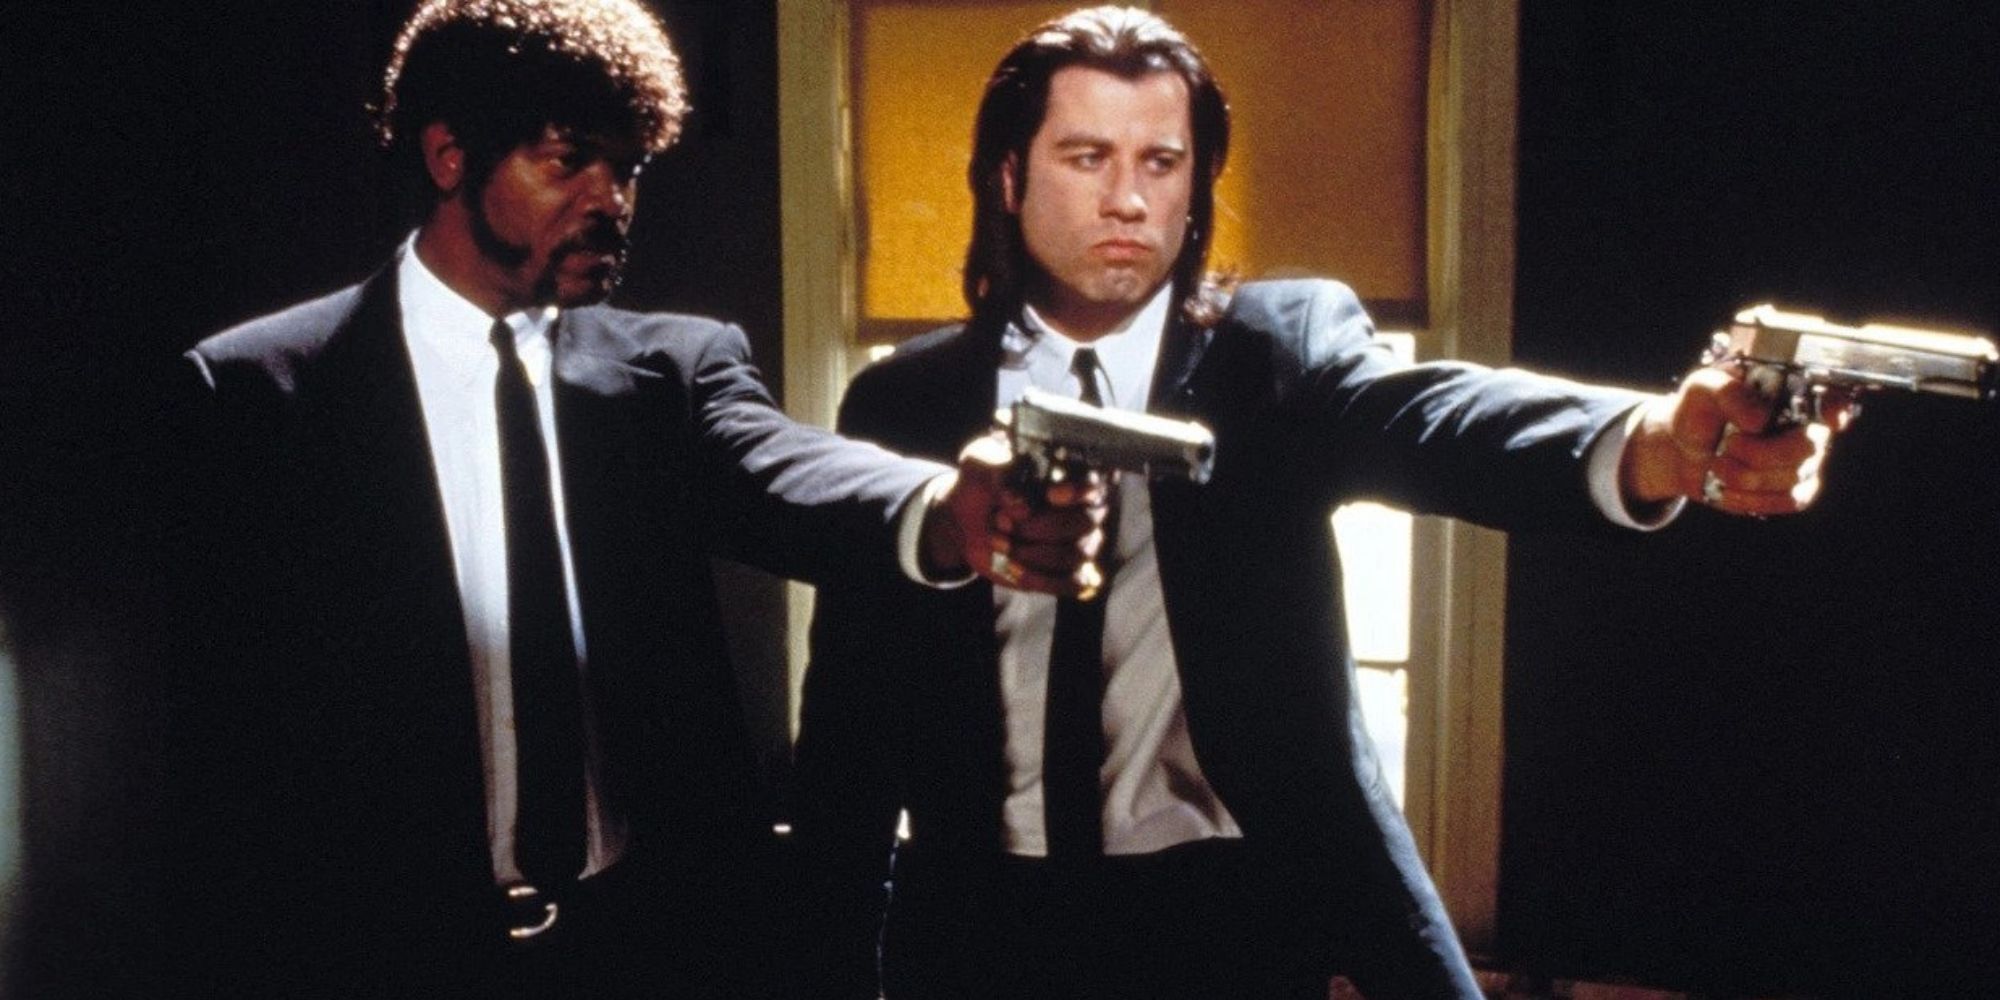 Samuel L. Jackson et John Travolta en costume et armés dans une scène de Pulp Fiction.